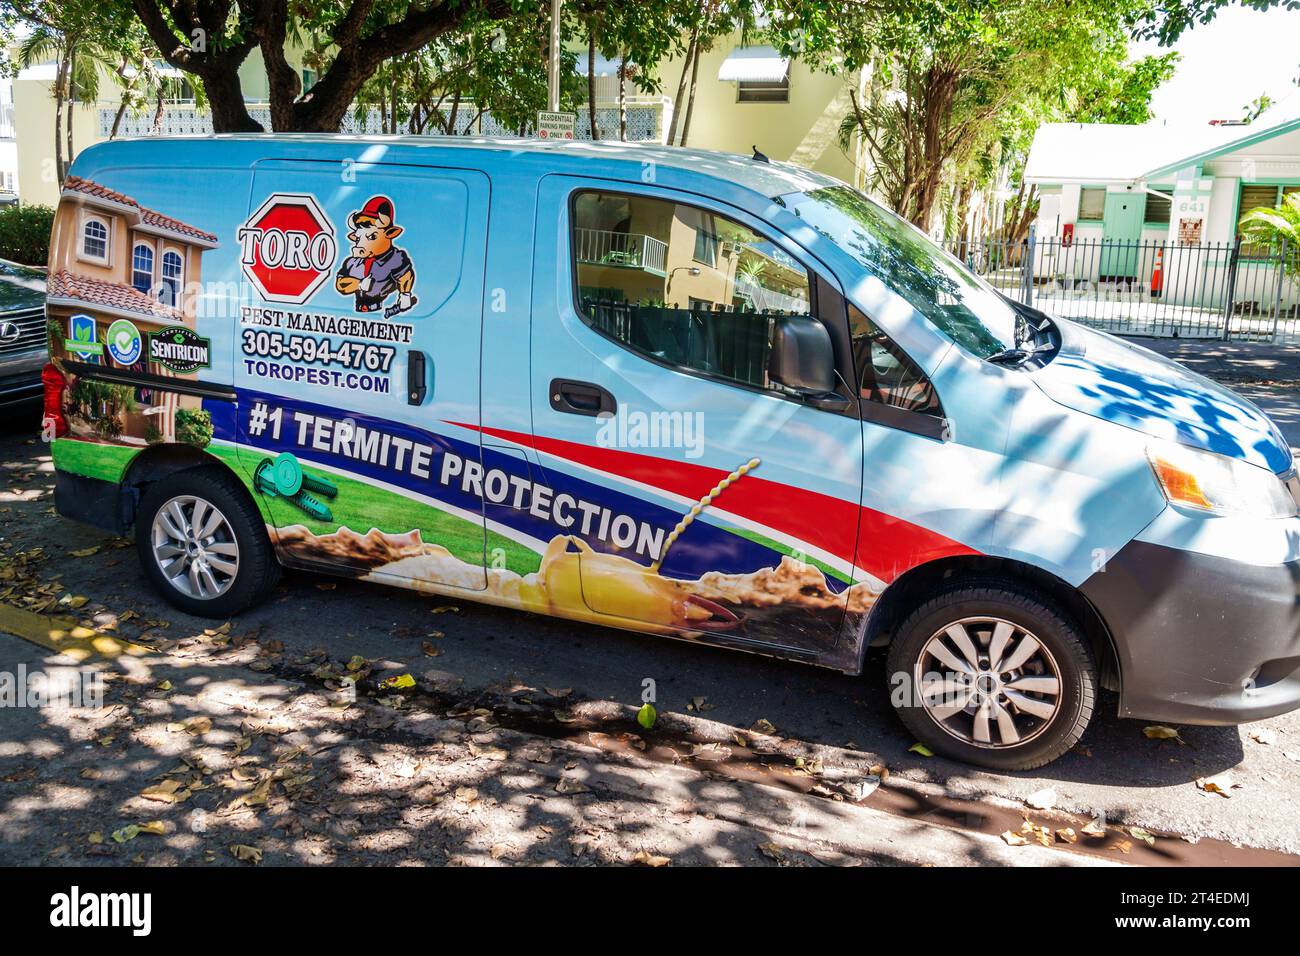 Miami Beach Floride, véhicule commercial de camion de travail, publicité de décoration de protection de termites de gestion de ravageurs Banque D'Images